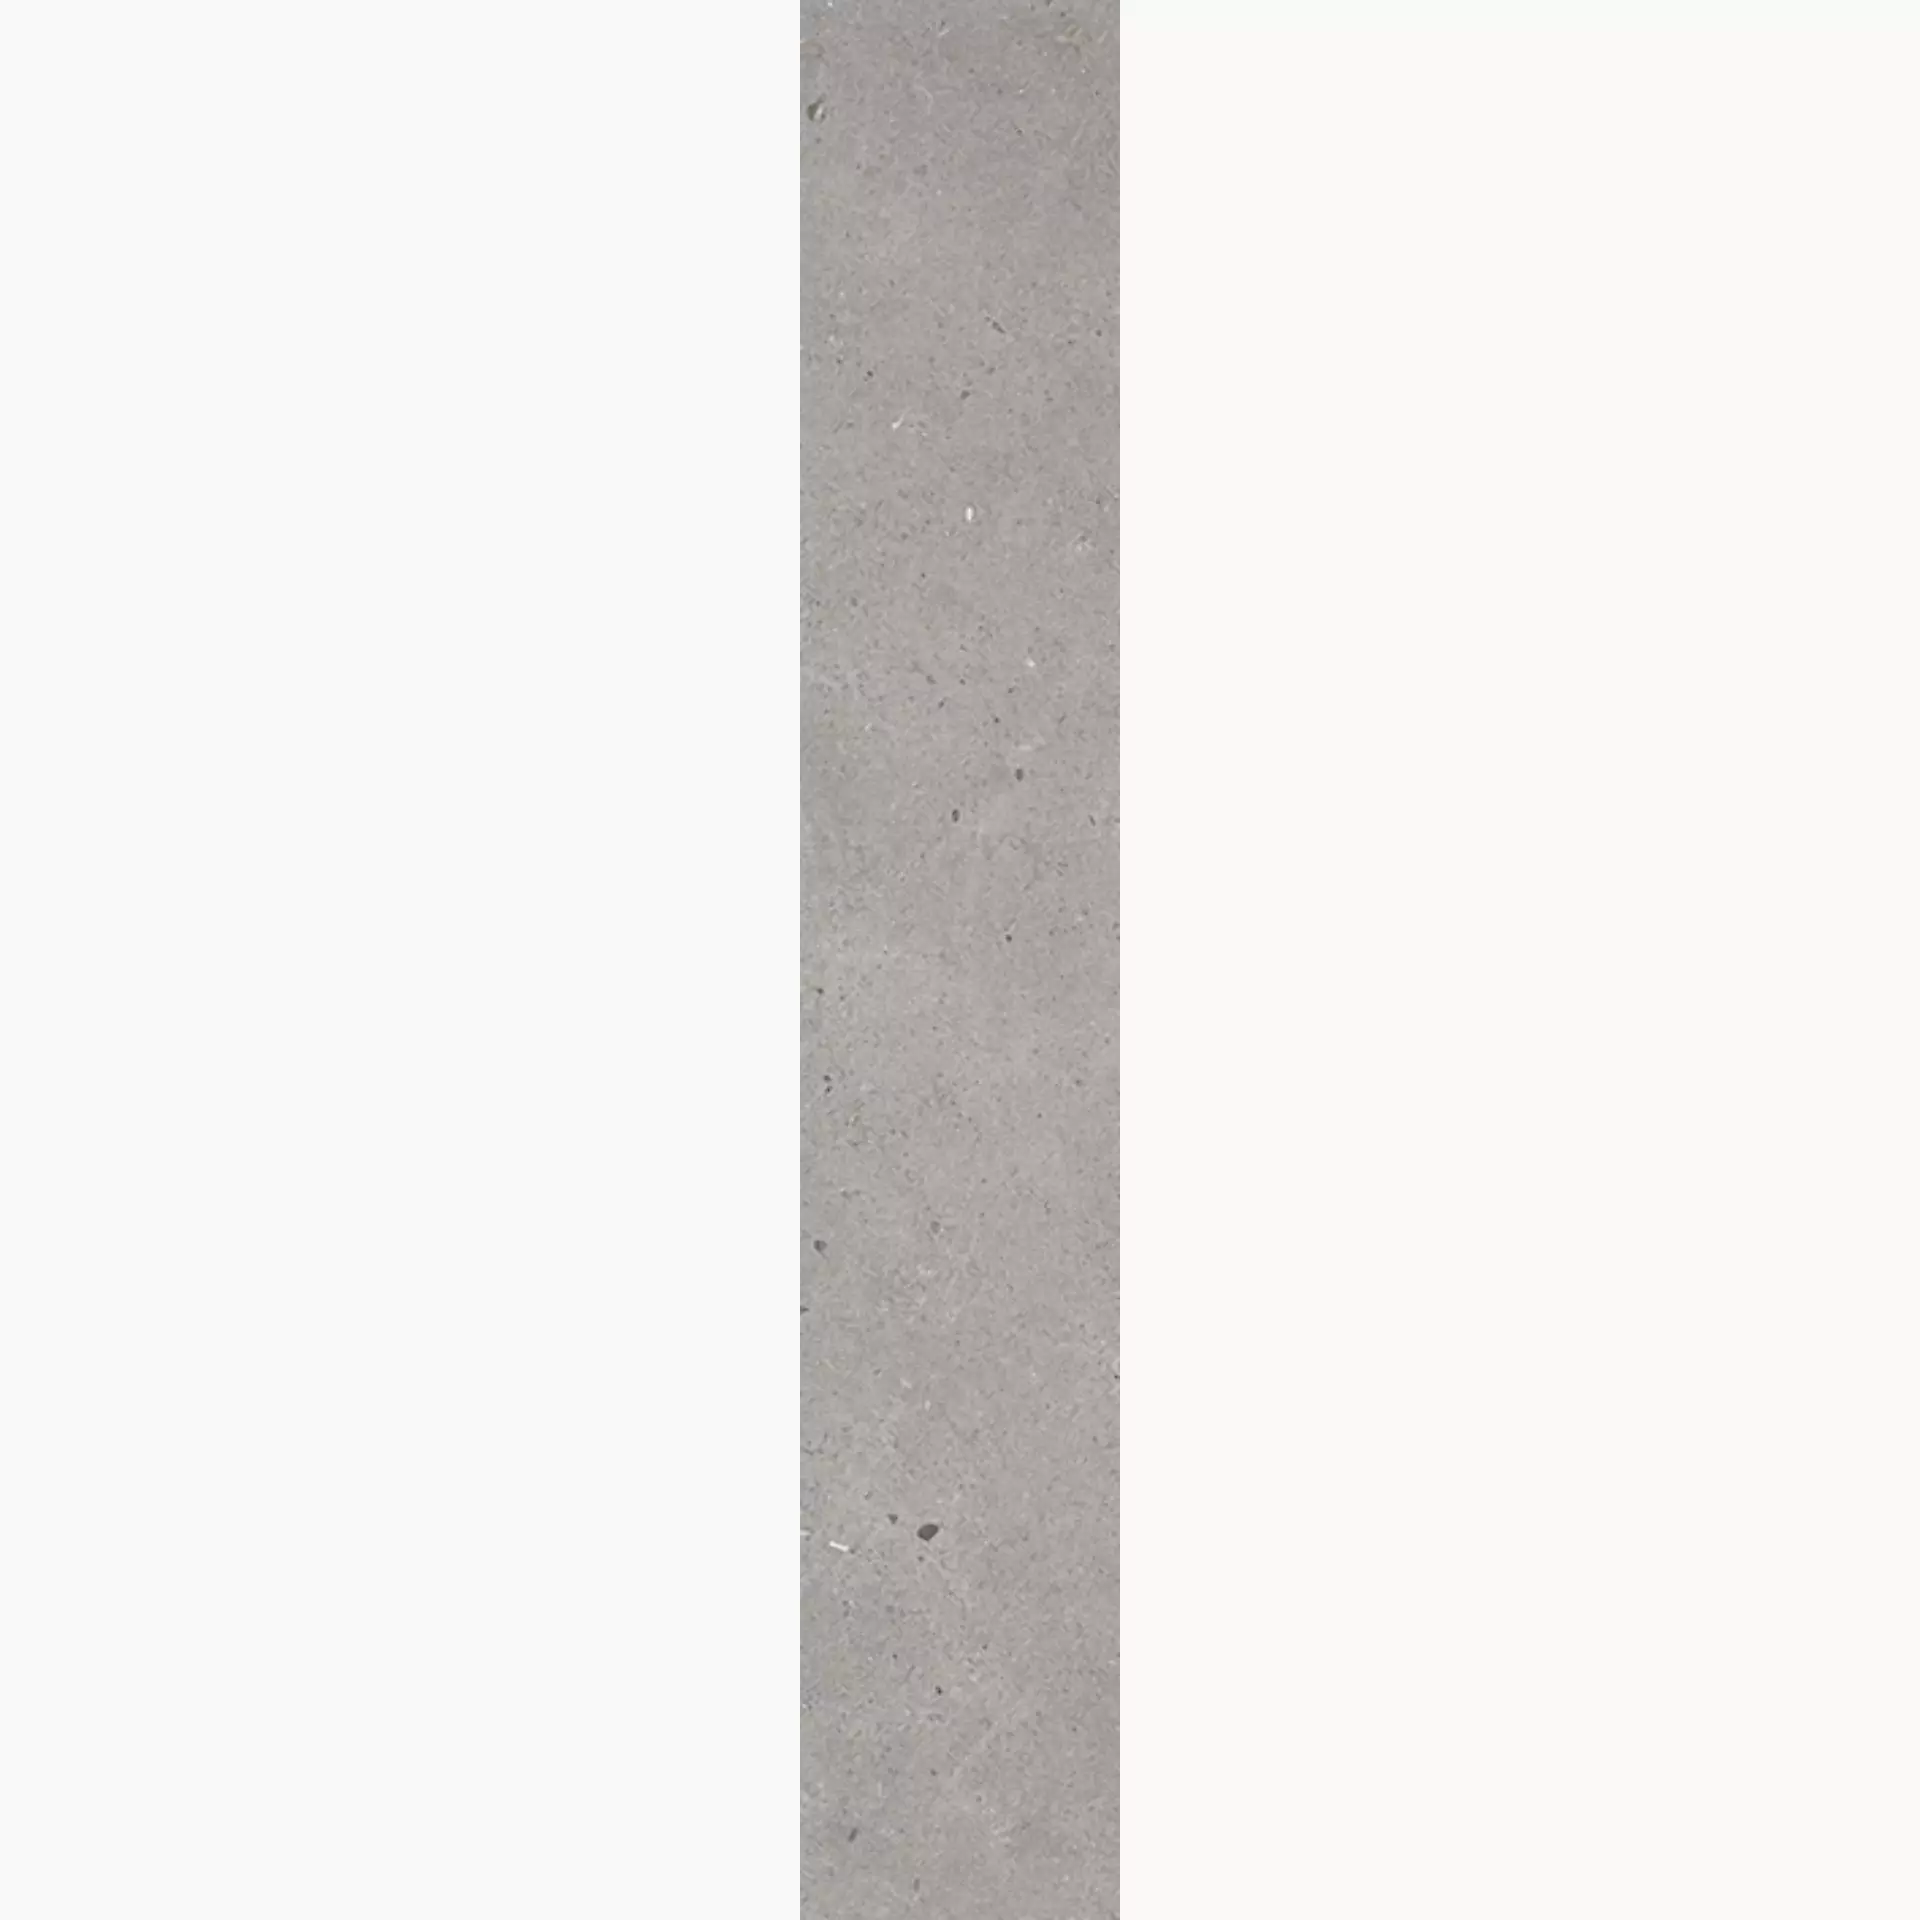 Wandfliese,Bodenfliese Villeroy & Boch Solid Tones Cool Concrete Matt Cool Concrete 2417-PC60 matt 10x60cm rektifiziert 10mm